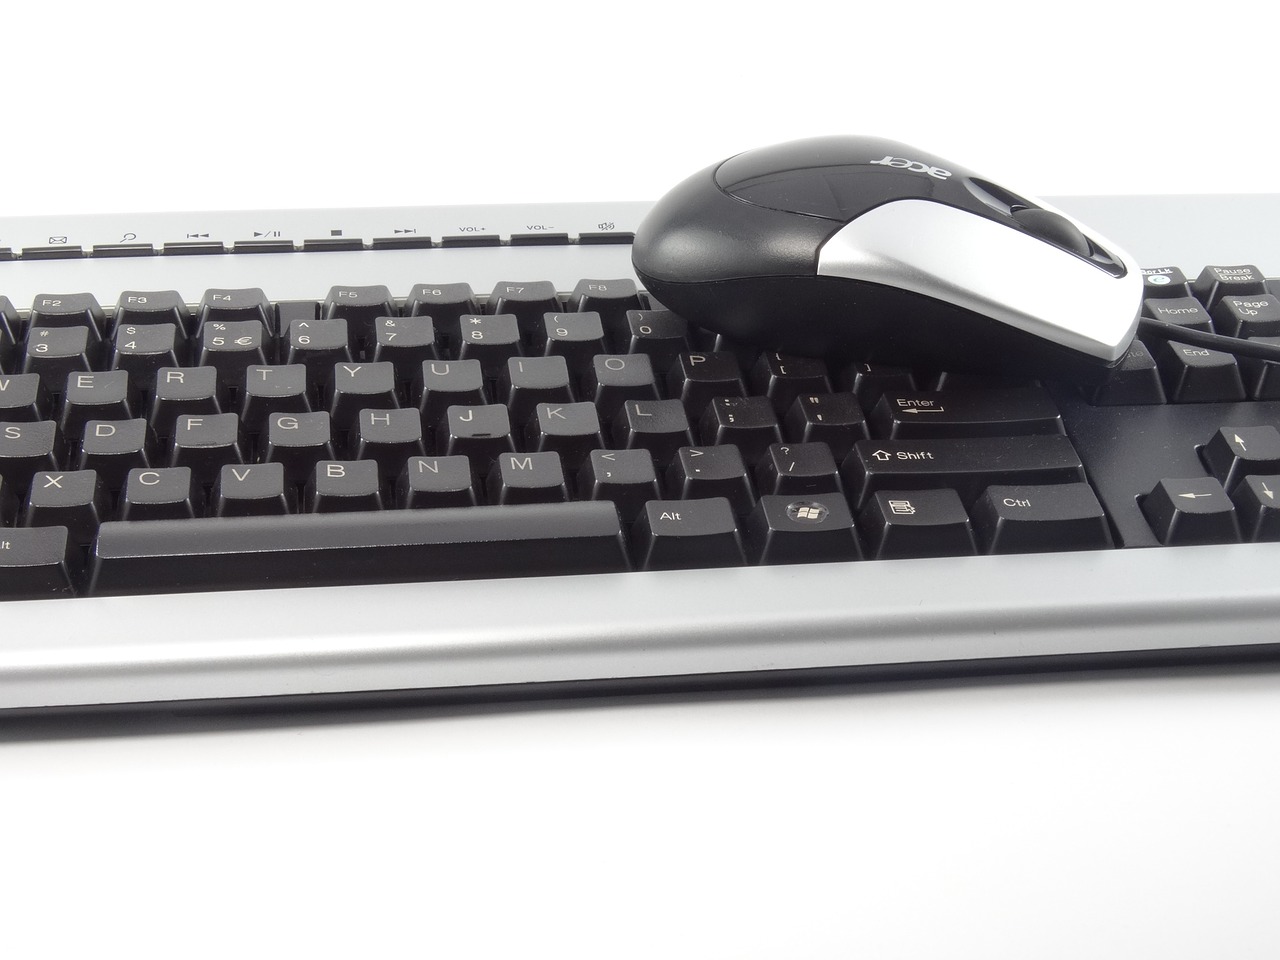 keyboard mouse hardware free photo